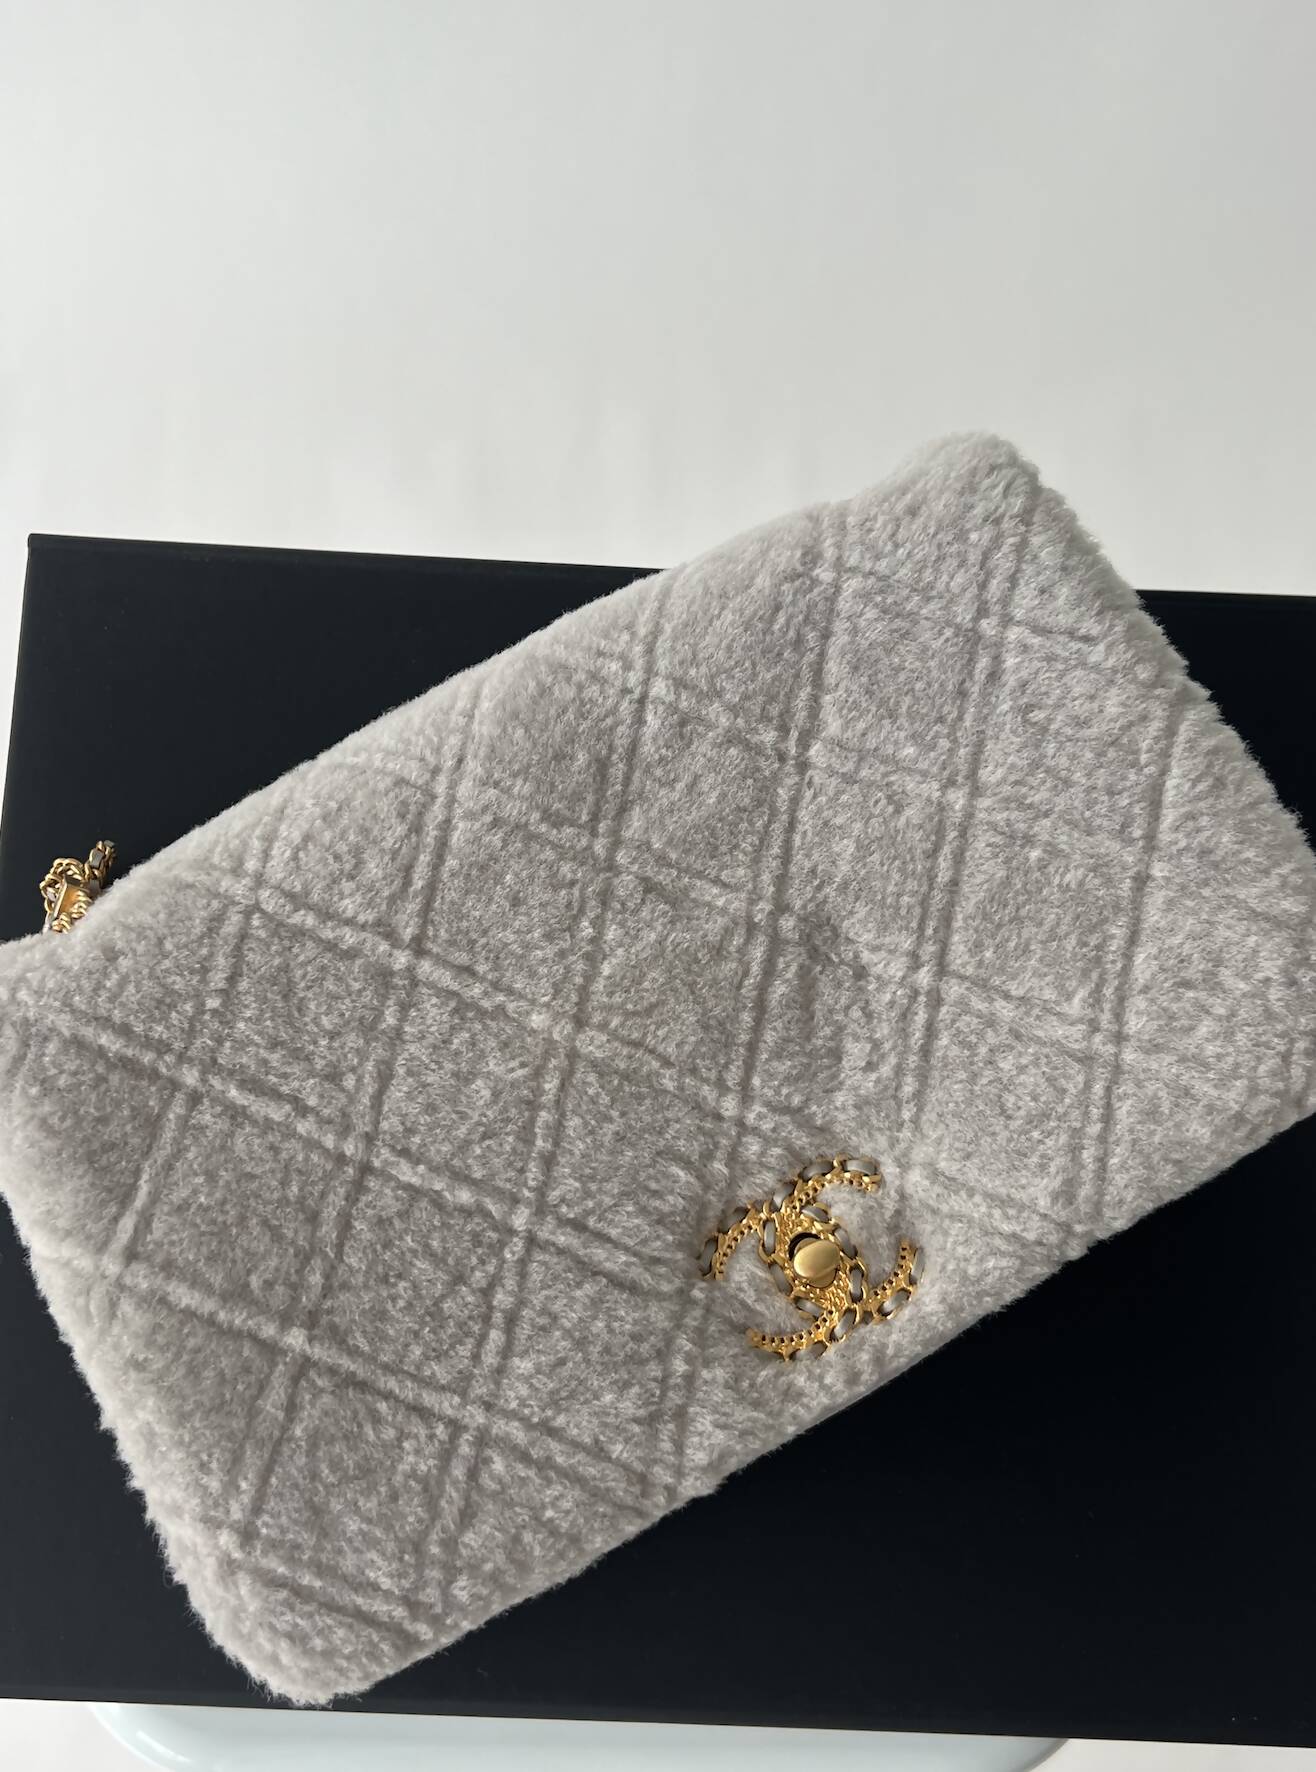 Chanel’s 2022 Métiers d’Art collection - Flap Bag